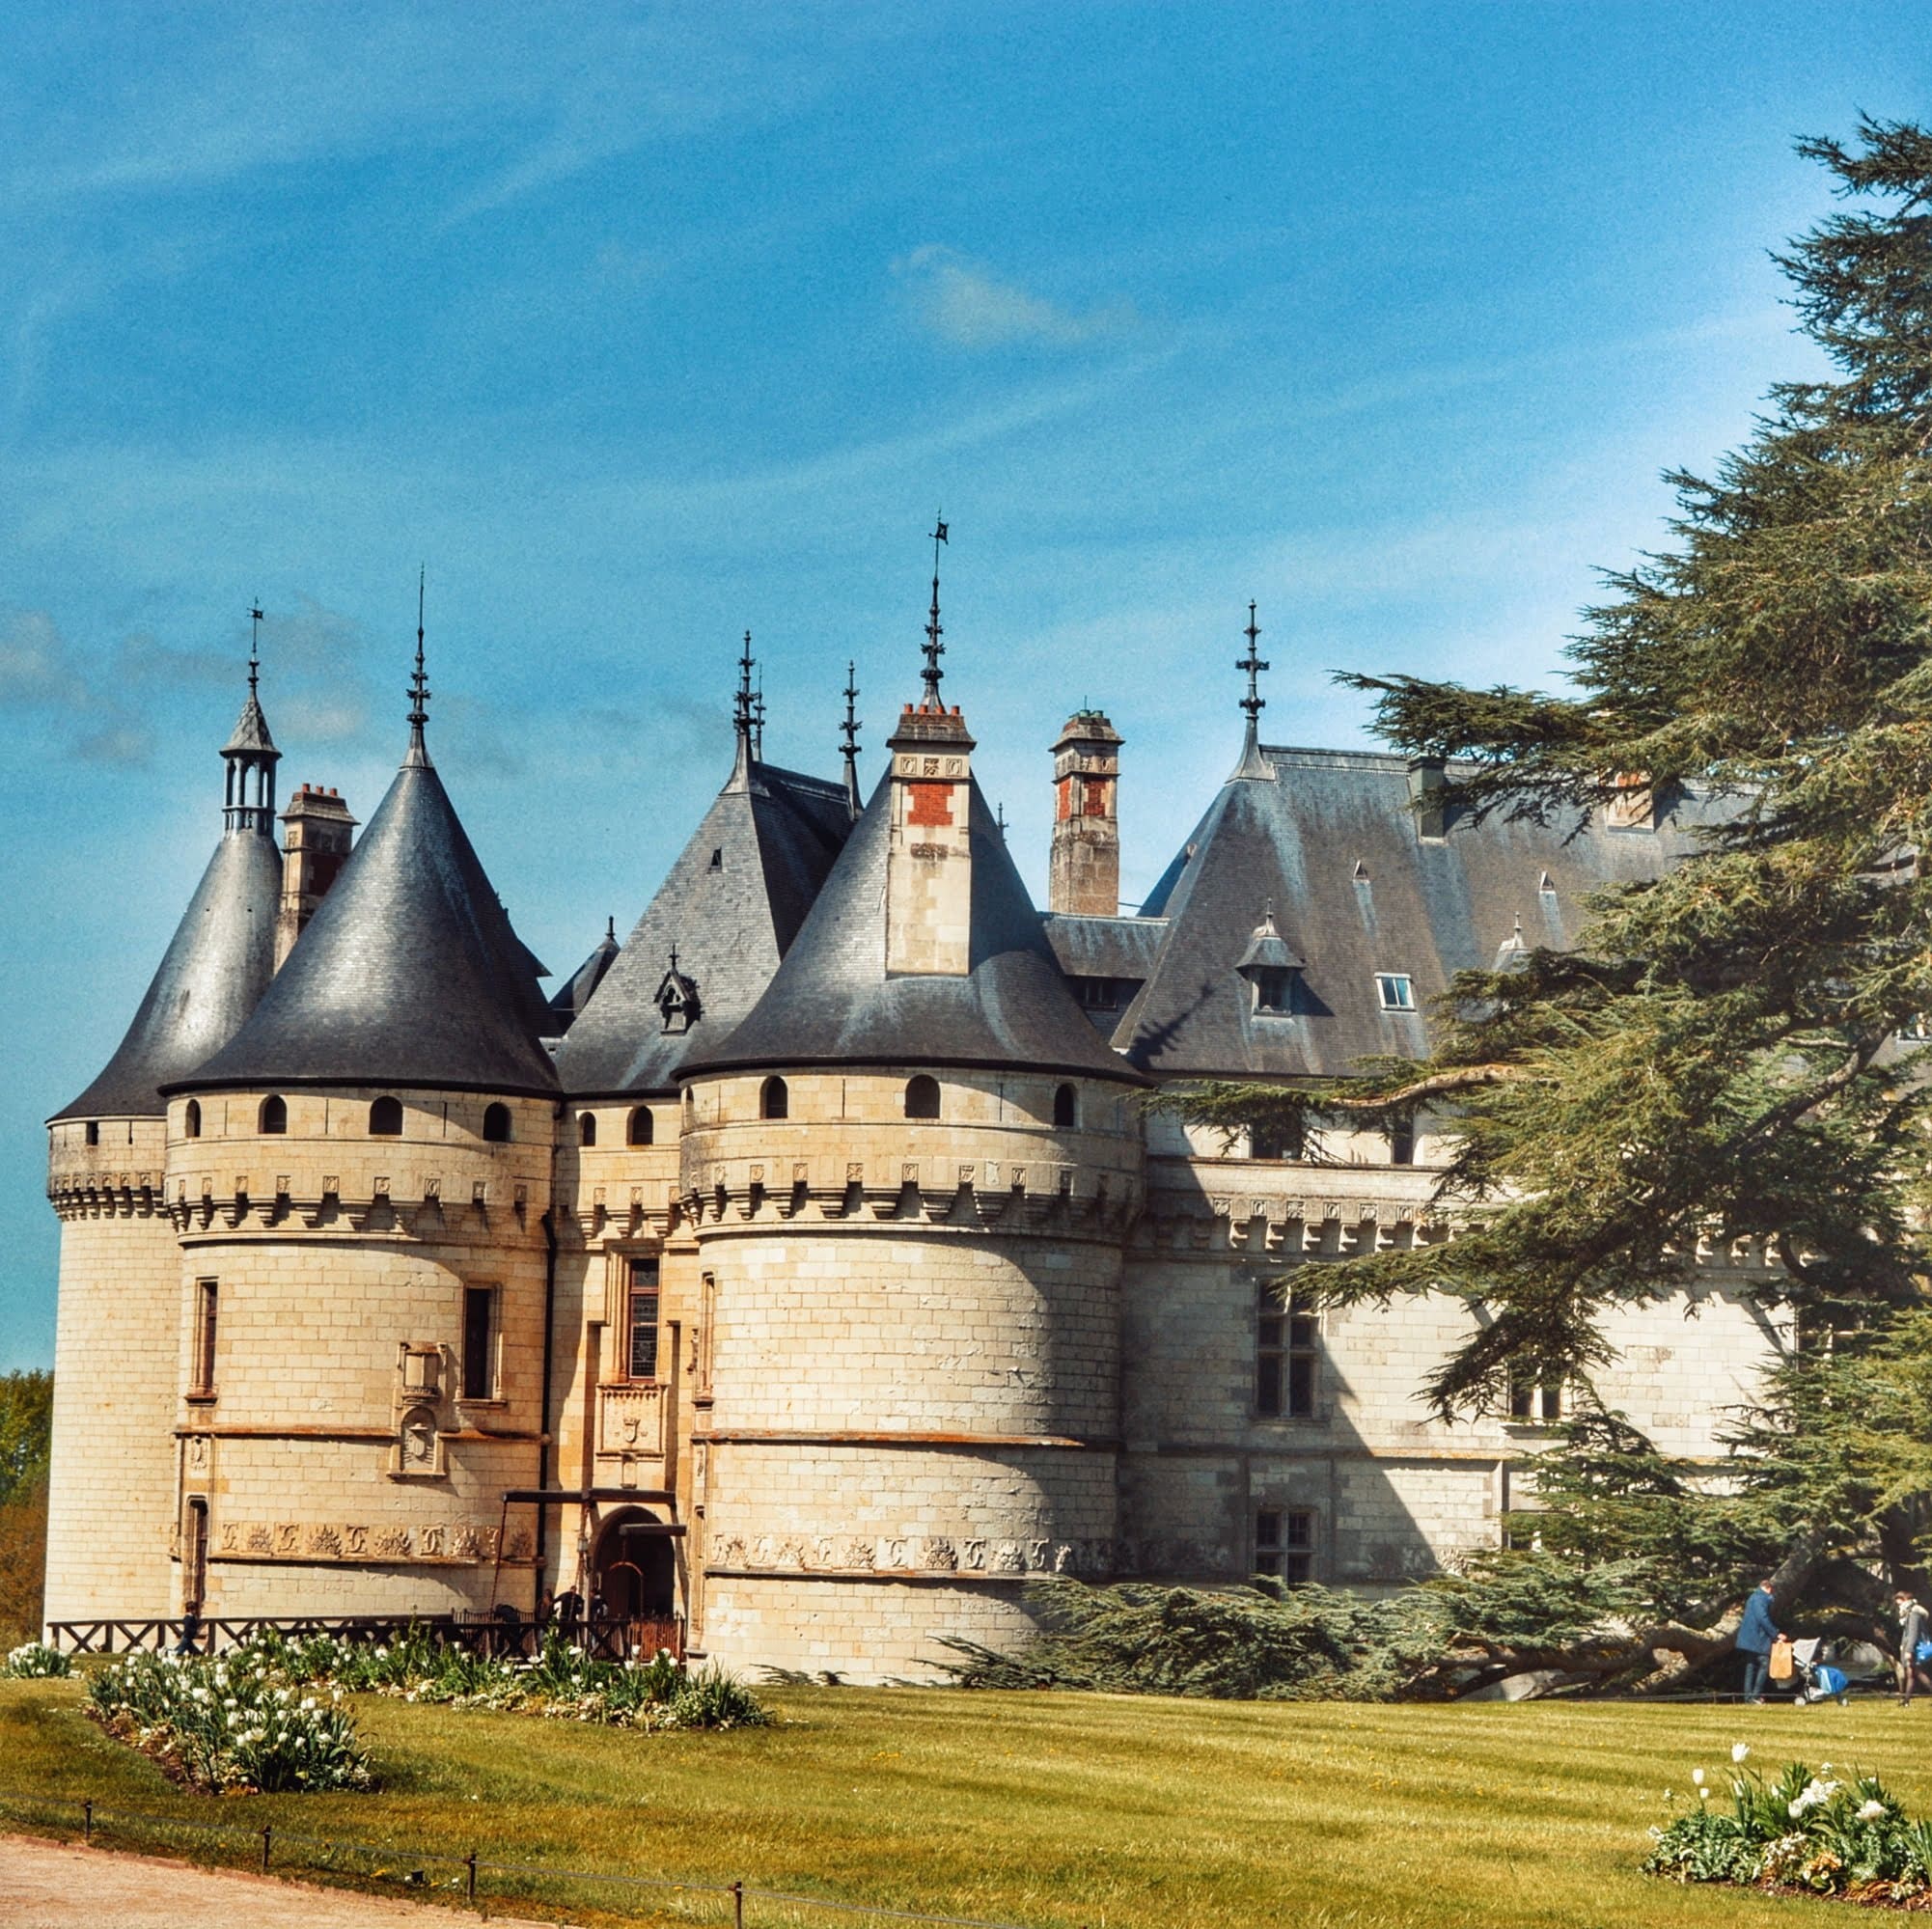 En este momento estás viendo Viaje a los Castillos del Loira: El Castillo de Chaumont + 8 castillos más